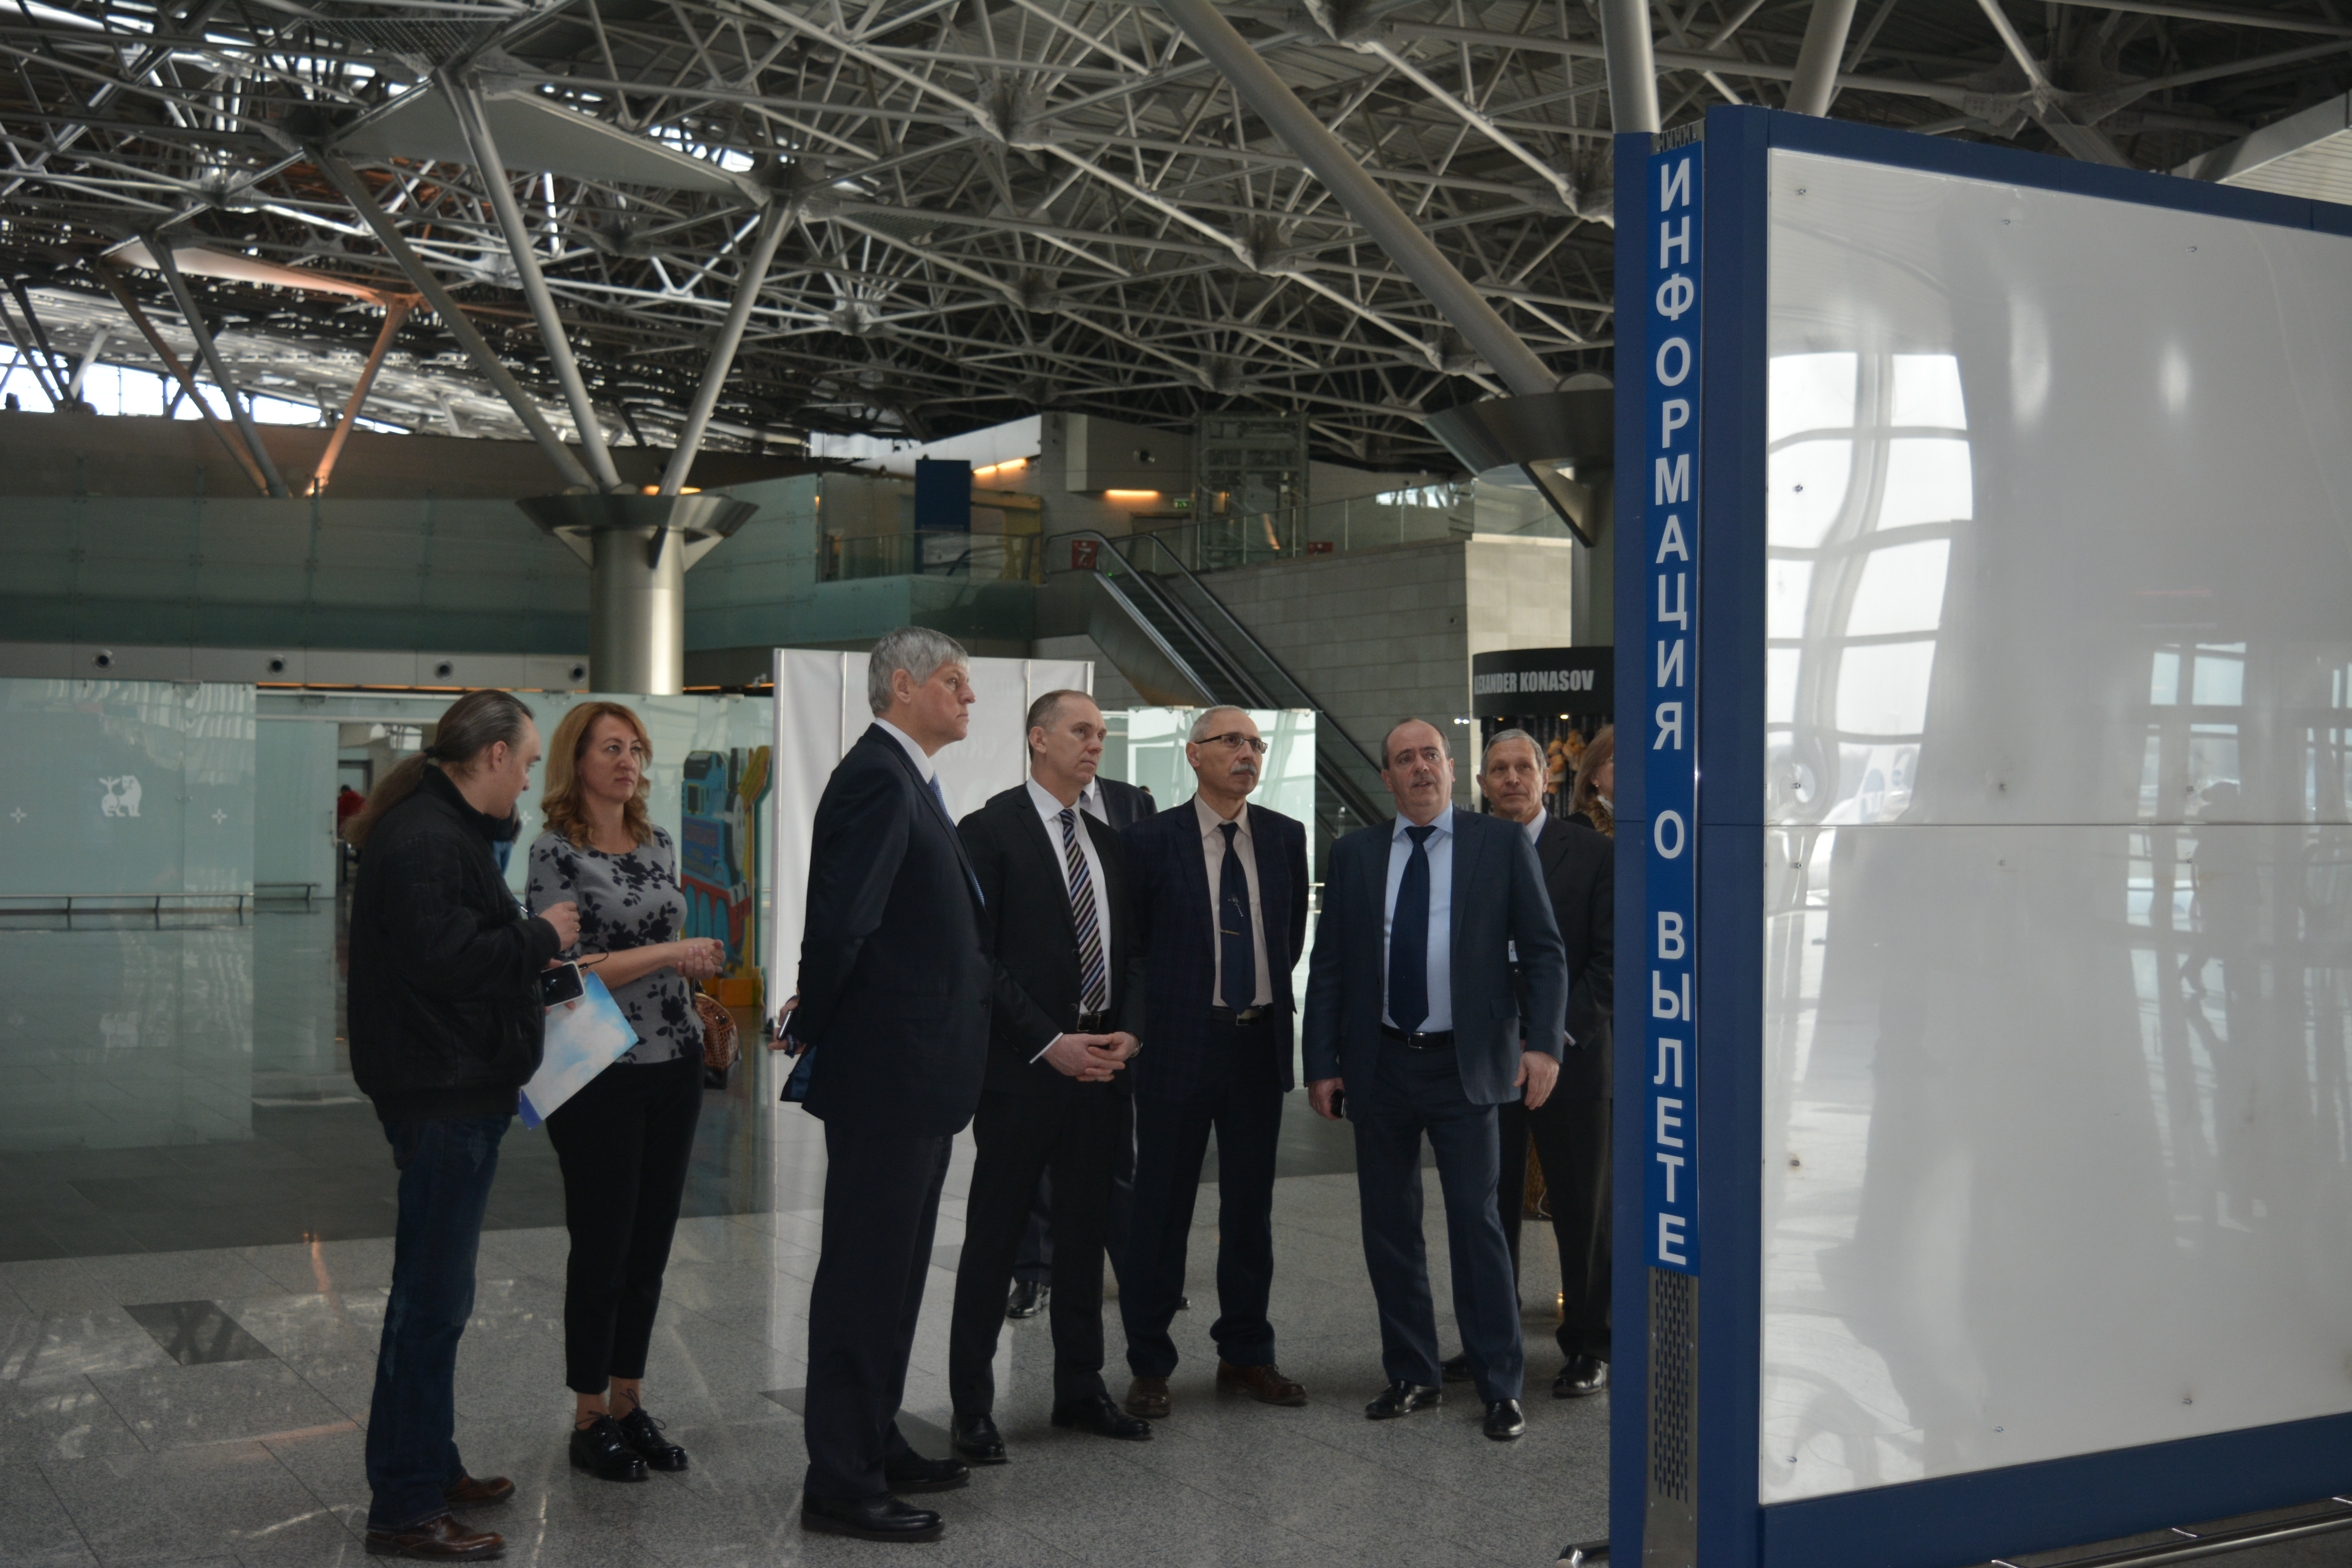 В аэропорту Внуково состоялось выездное заседание Международной ассоциации аэропортов | Международный аэропорт Внуково